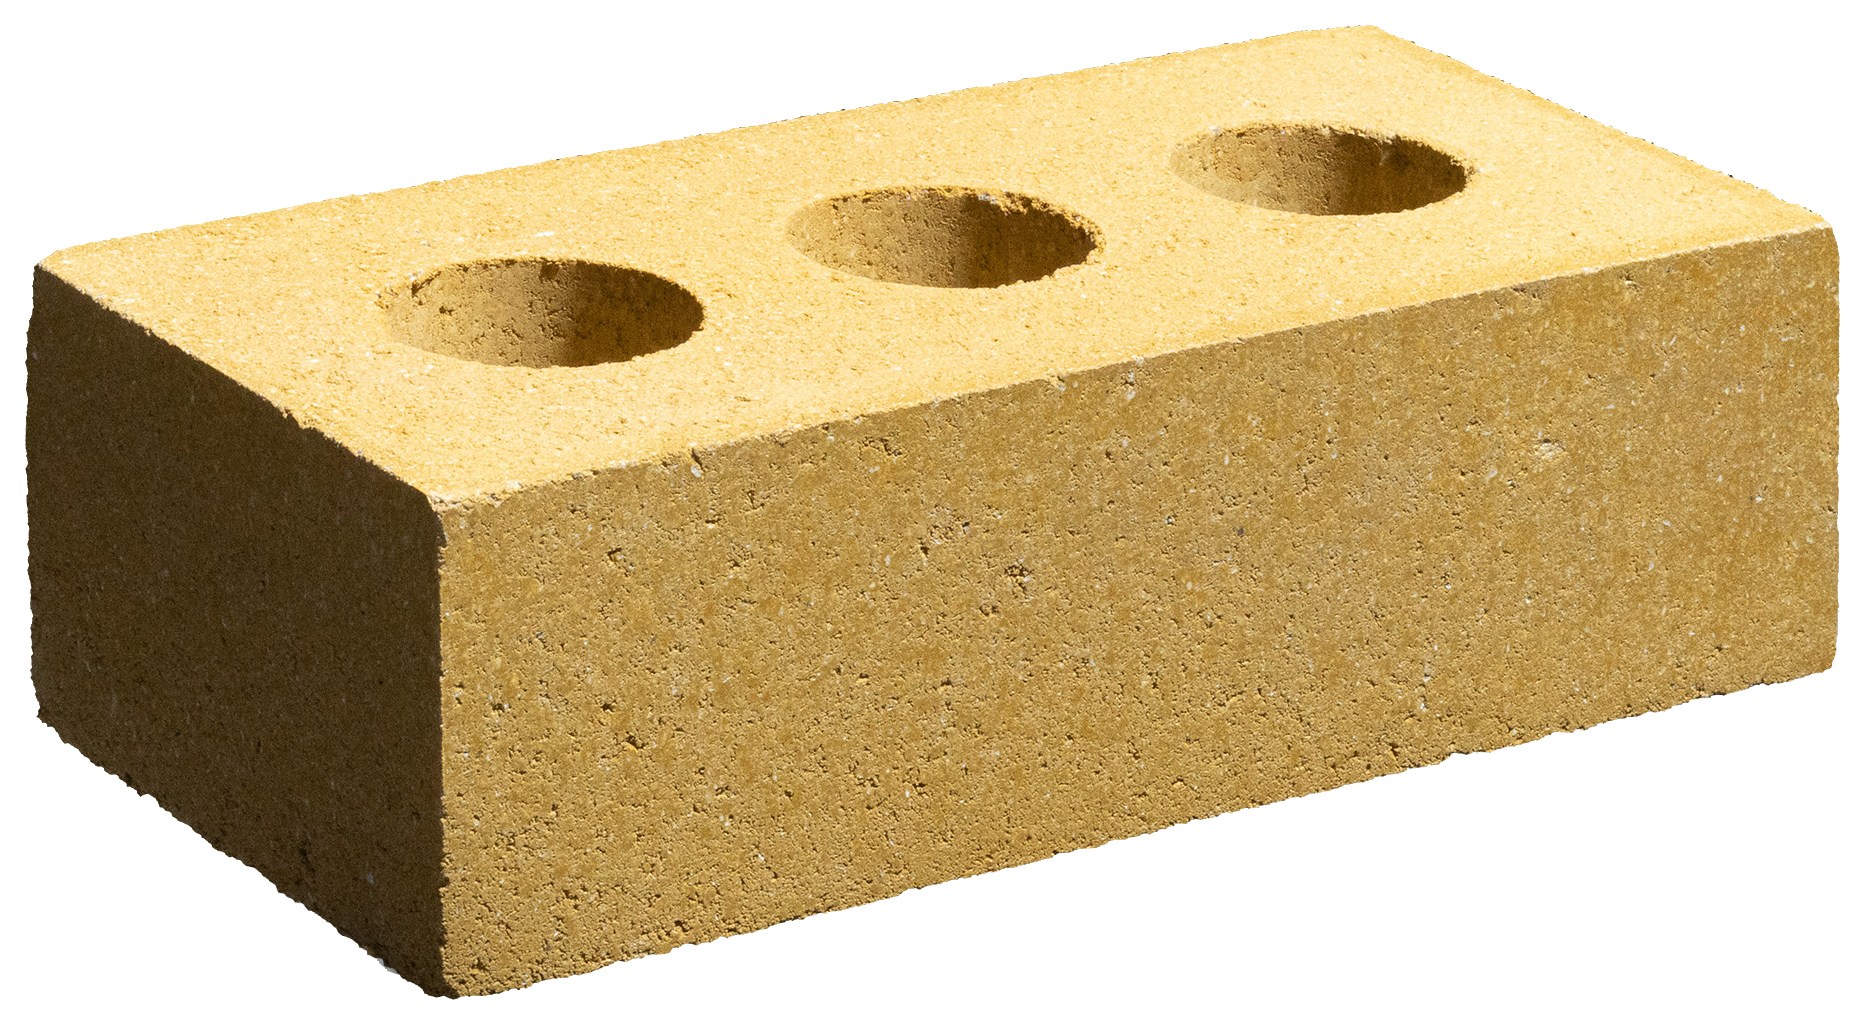 Marshalls Ashdown Buff Facing Brick - 215 x 100 x 65mm